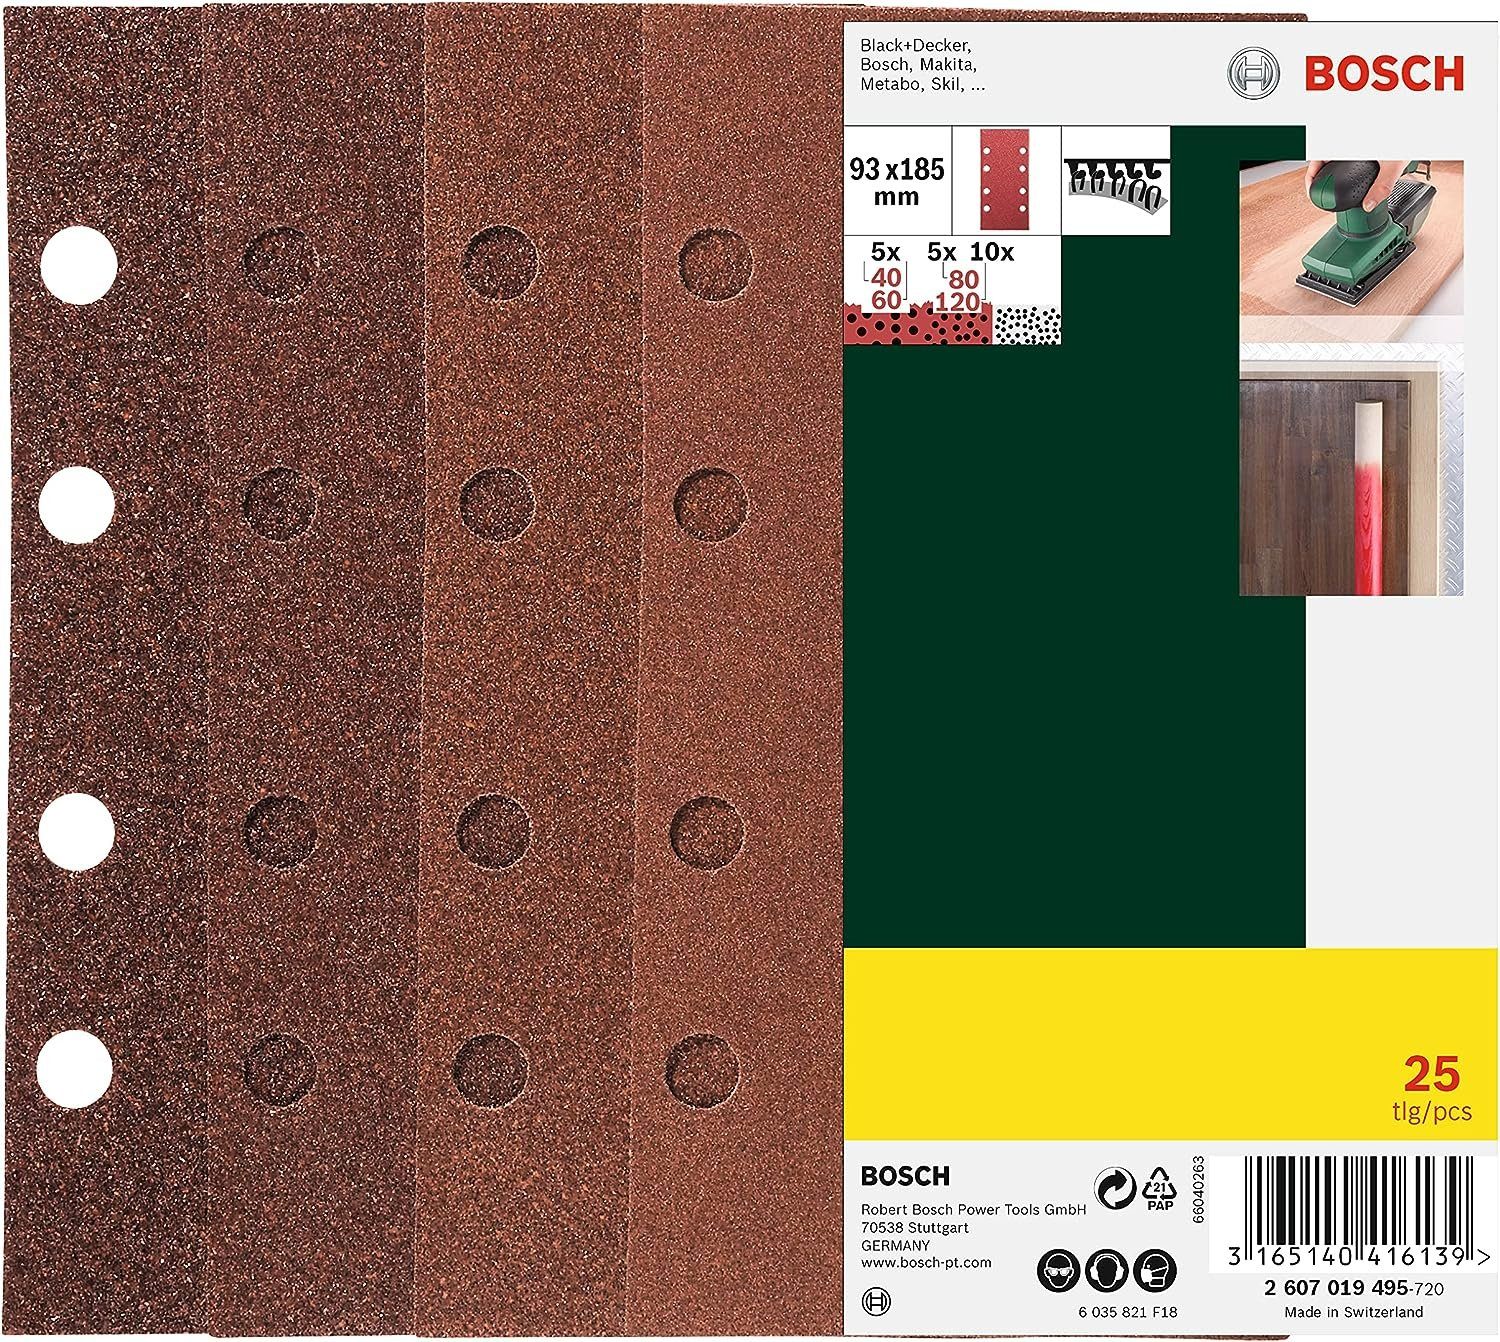 BOSCH Bohrfutter Bosch Schleifblatt Set 25 Stück 93 x 185 mm, 60/80/120/240, 8 Löcher